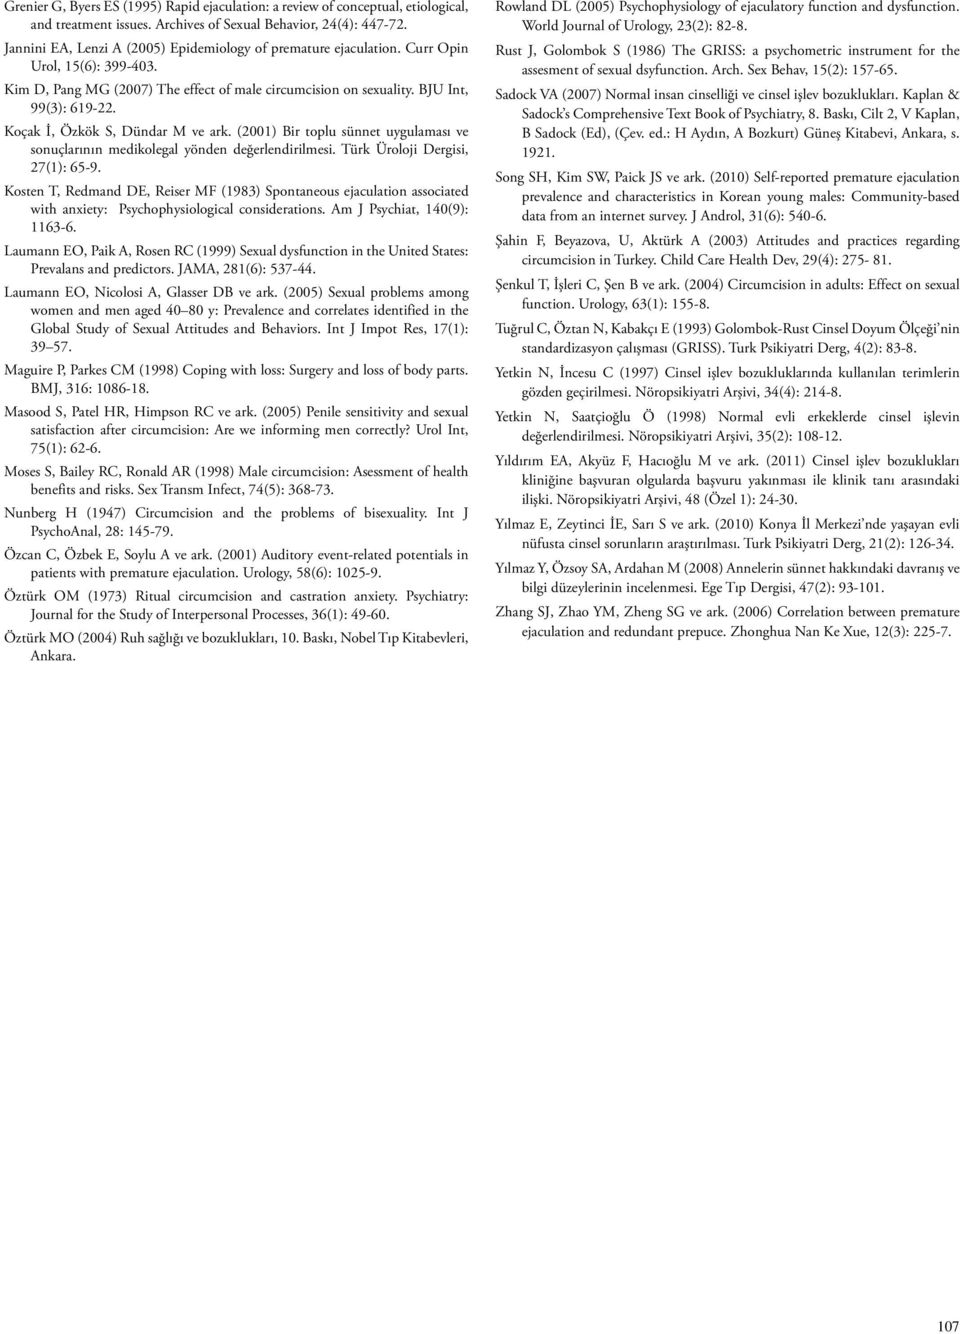 Koçak İ, Özkök S, Dündar M ve ark. (2001) Bir toplu sünnet uygulaması ve sonuçlarının medikolegal yönden değerlendirilmesi. Türk Üroloji Dergisi, 27(1): 65-9.